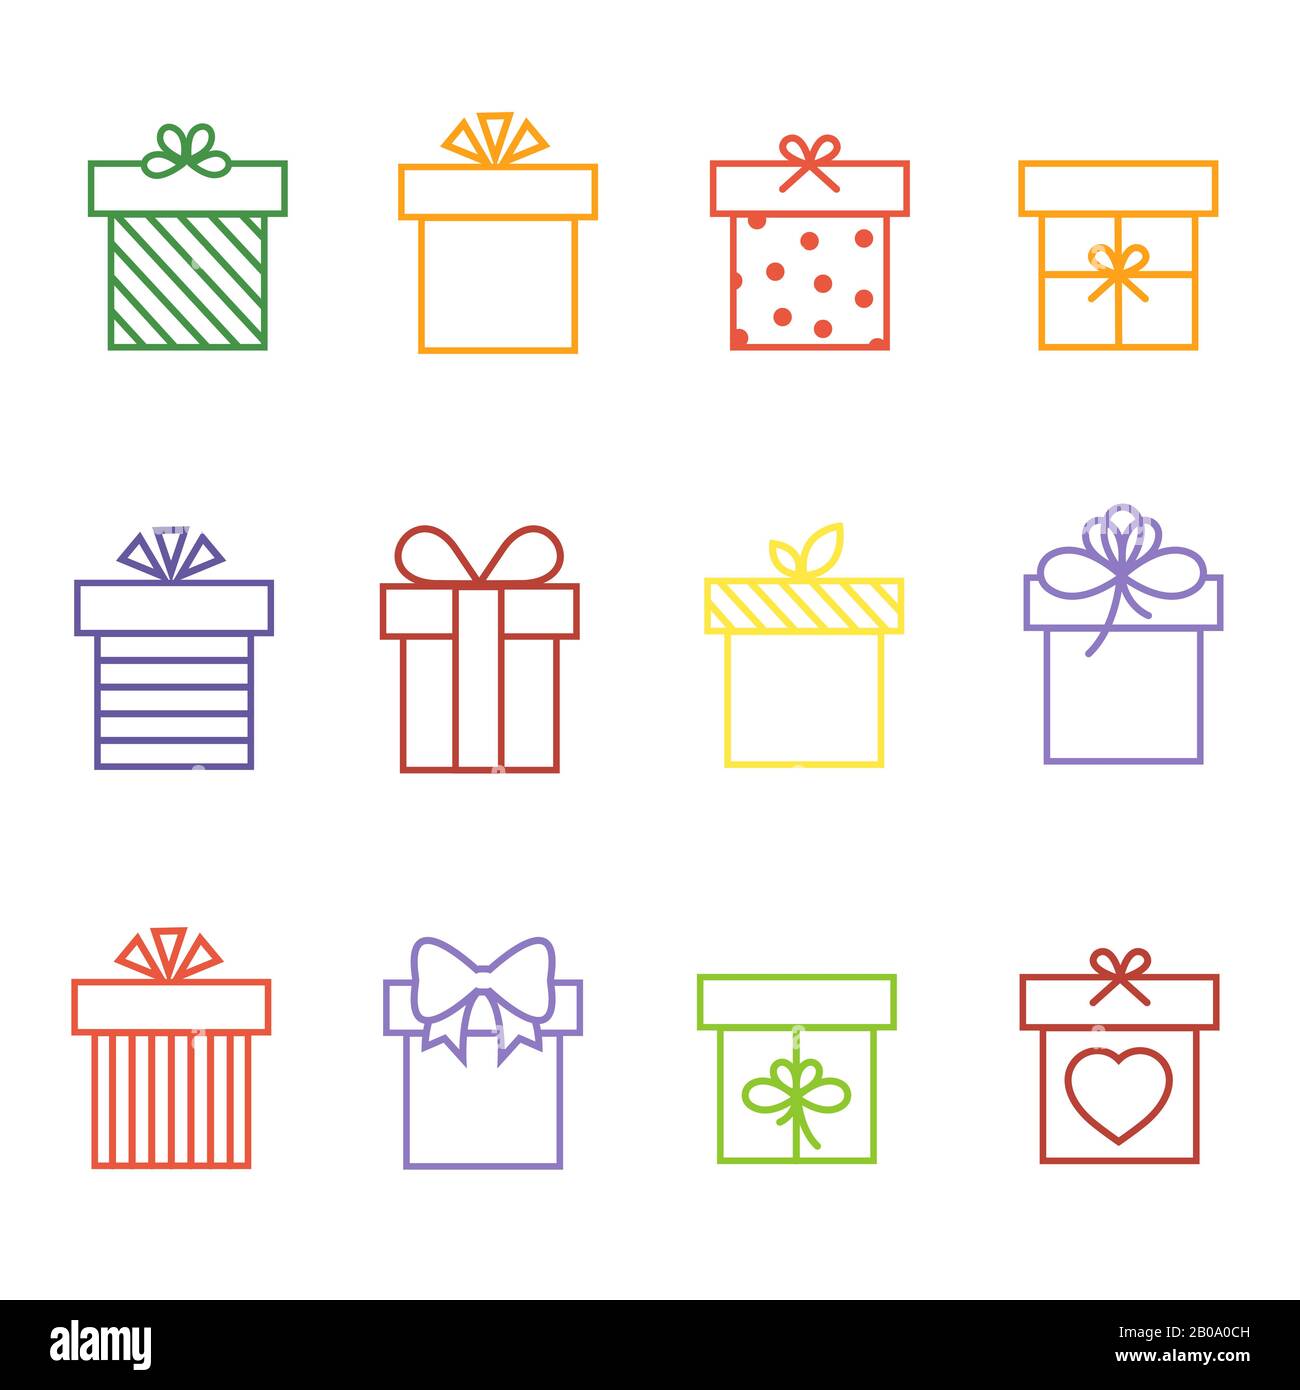 Les boîtes cadeaux multicolores Vector à anniversaire ou les icônes de ligne fine Noël définissent l'illustration Illustration de Vecteur